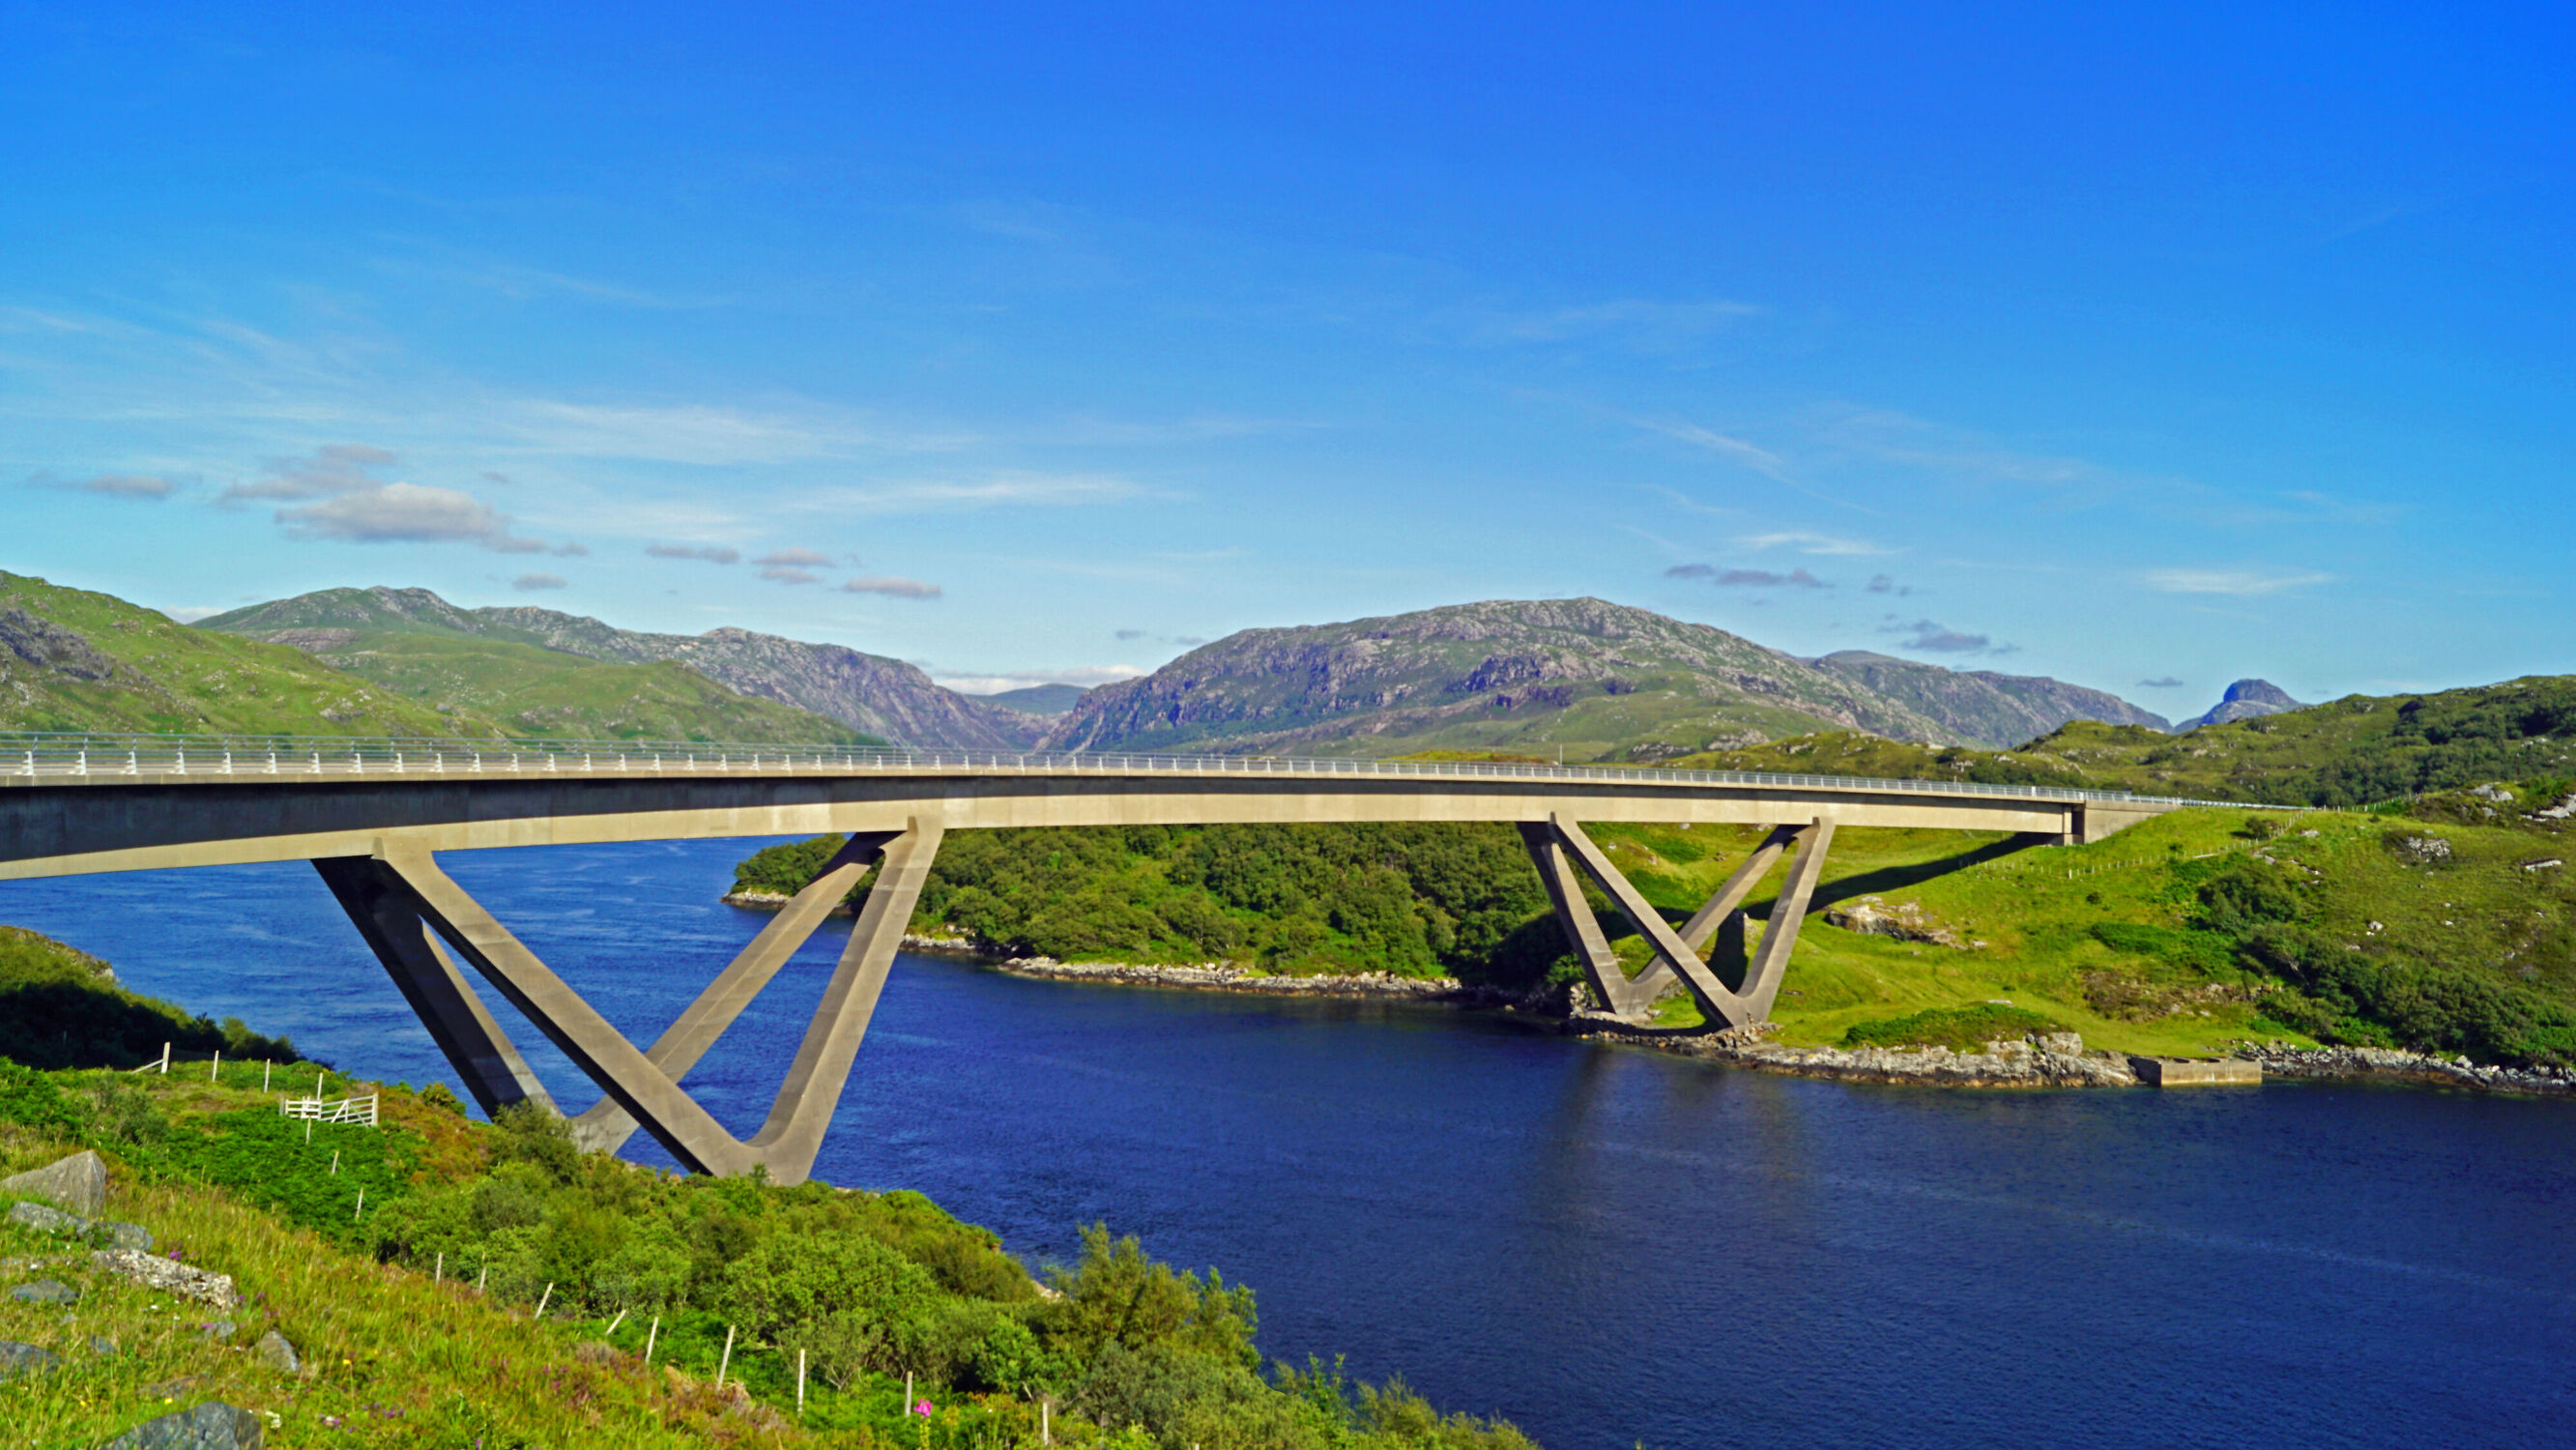 Bild mit Natur, Berge, Landschaft, Blauer Himmel, Brücke, Schottland, bauwerk, Loch Eriboll